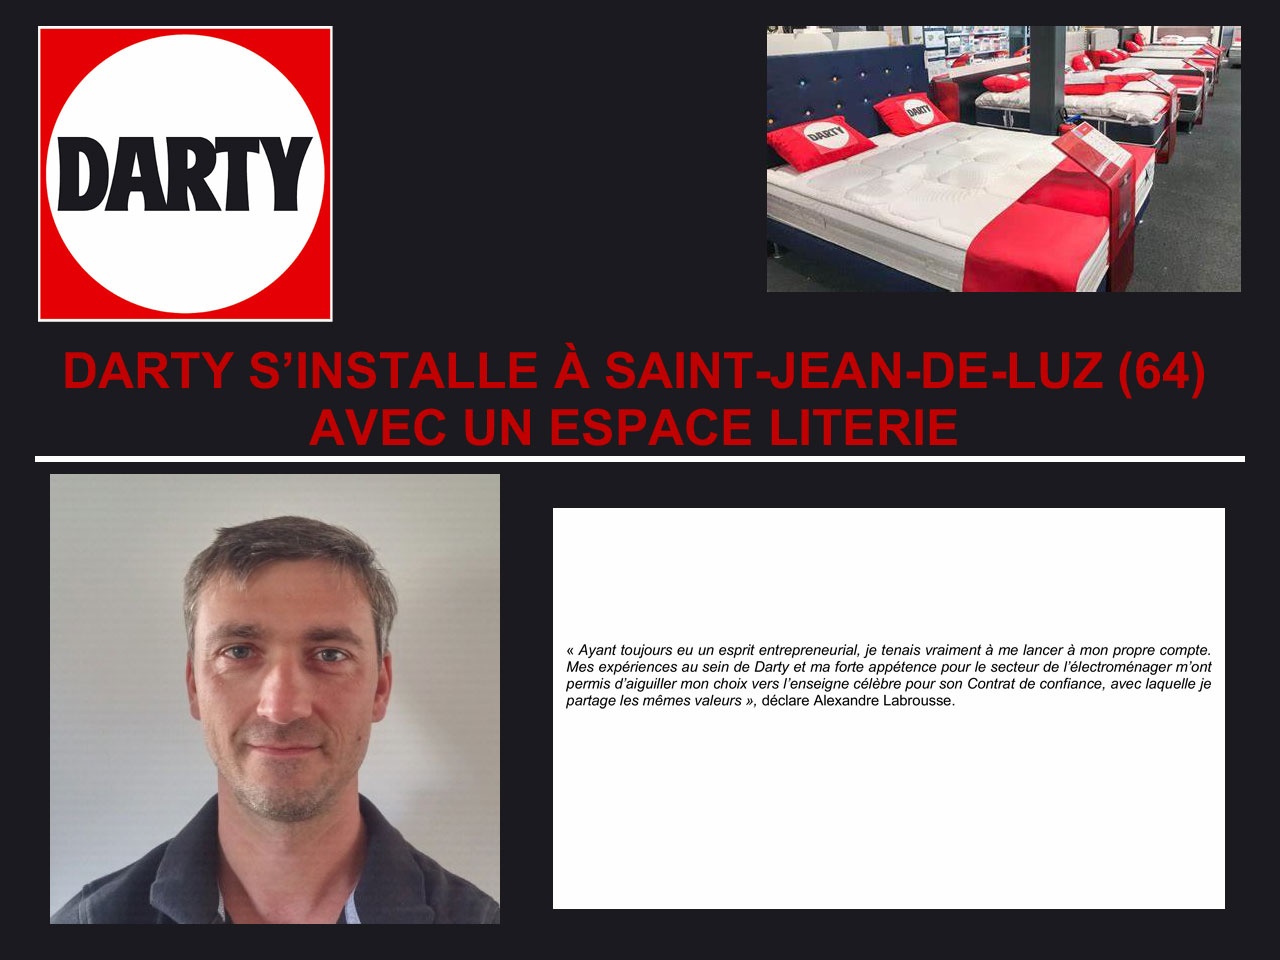 DARTY S’INSTALLE À SAINT-JEAN-DE-LUZ (64) AVEC UN ESPACE LITERIE